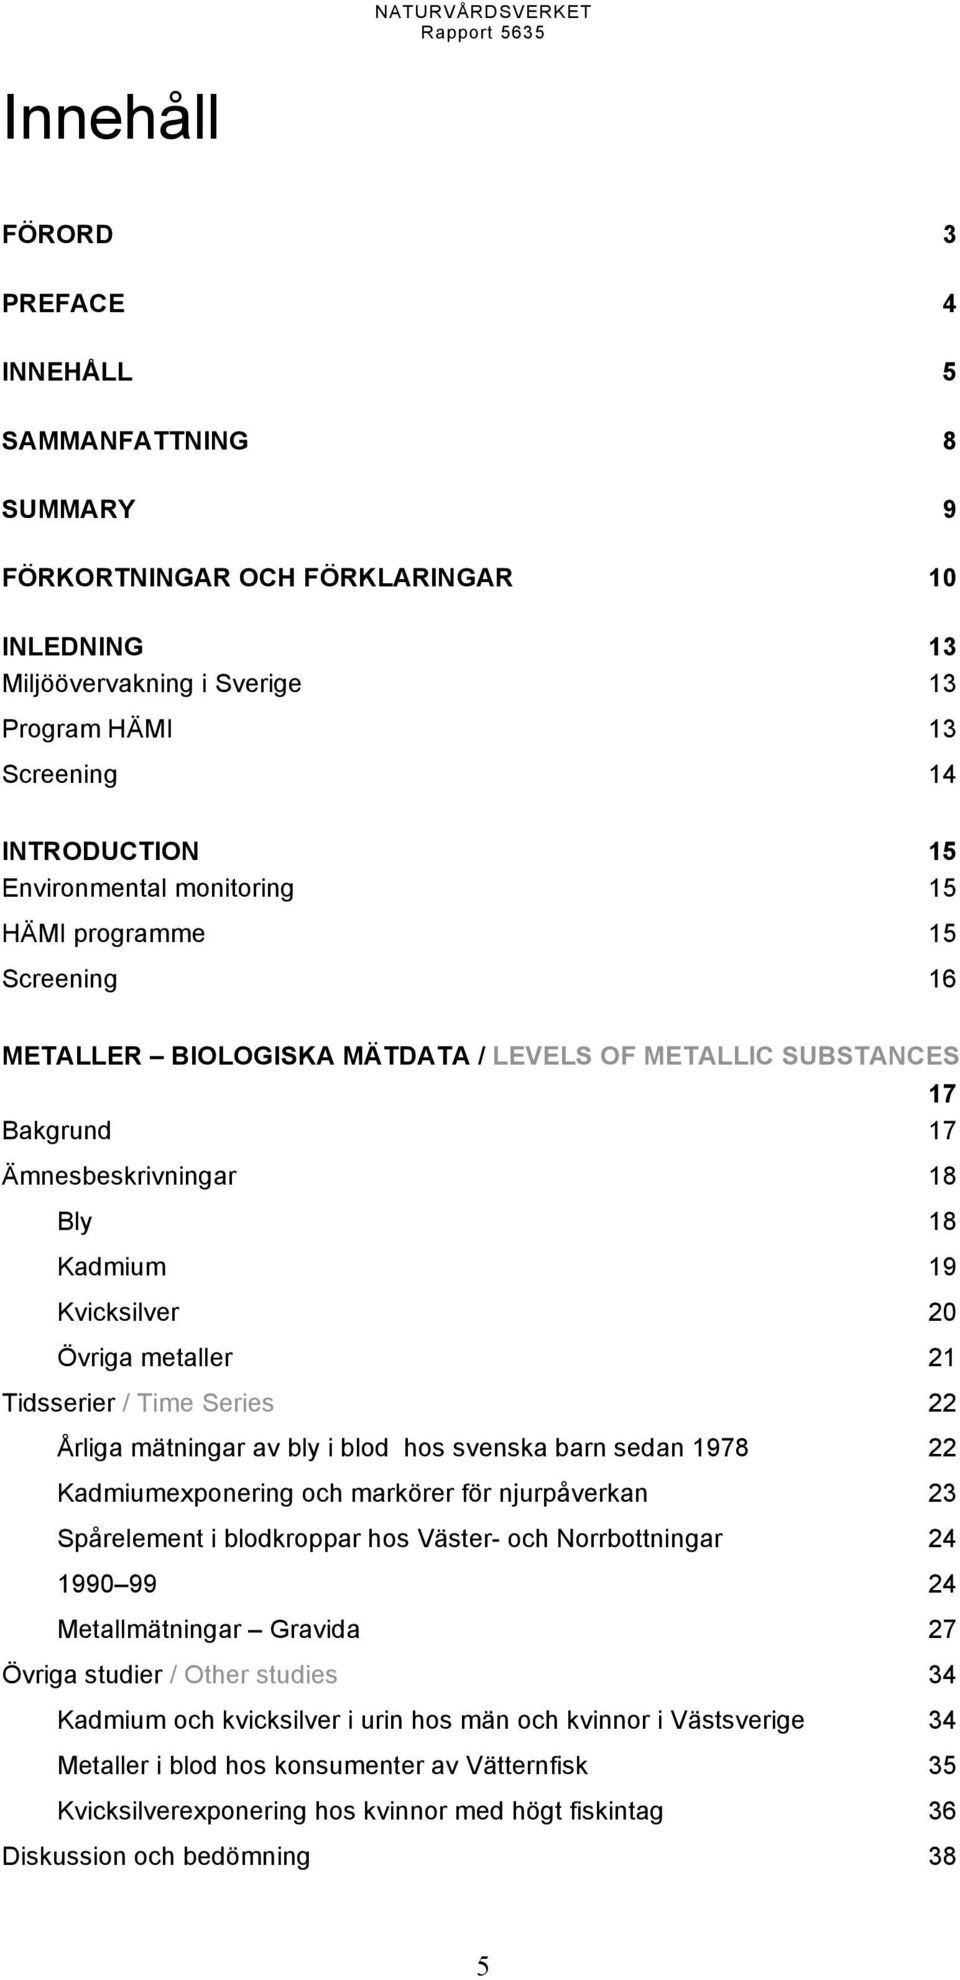 metaller 21 Tidsserier /TimeSeries 22 Årliga mätningar av bly i blod hos svenska barn sedan 1978 22 Kadmiumexponering och markörer för njurpåverkan 23 Spårelement i blodkroppar hos Väster- och